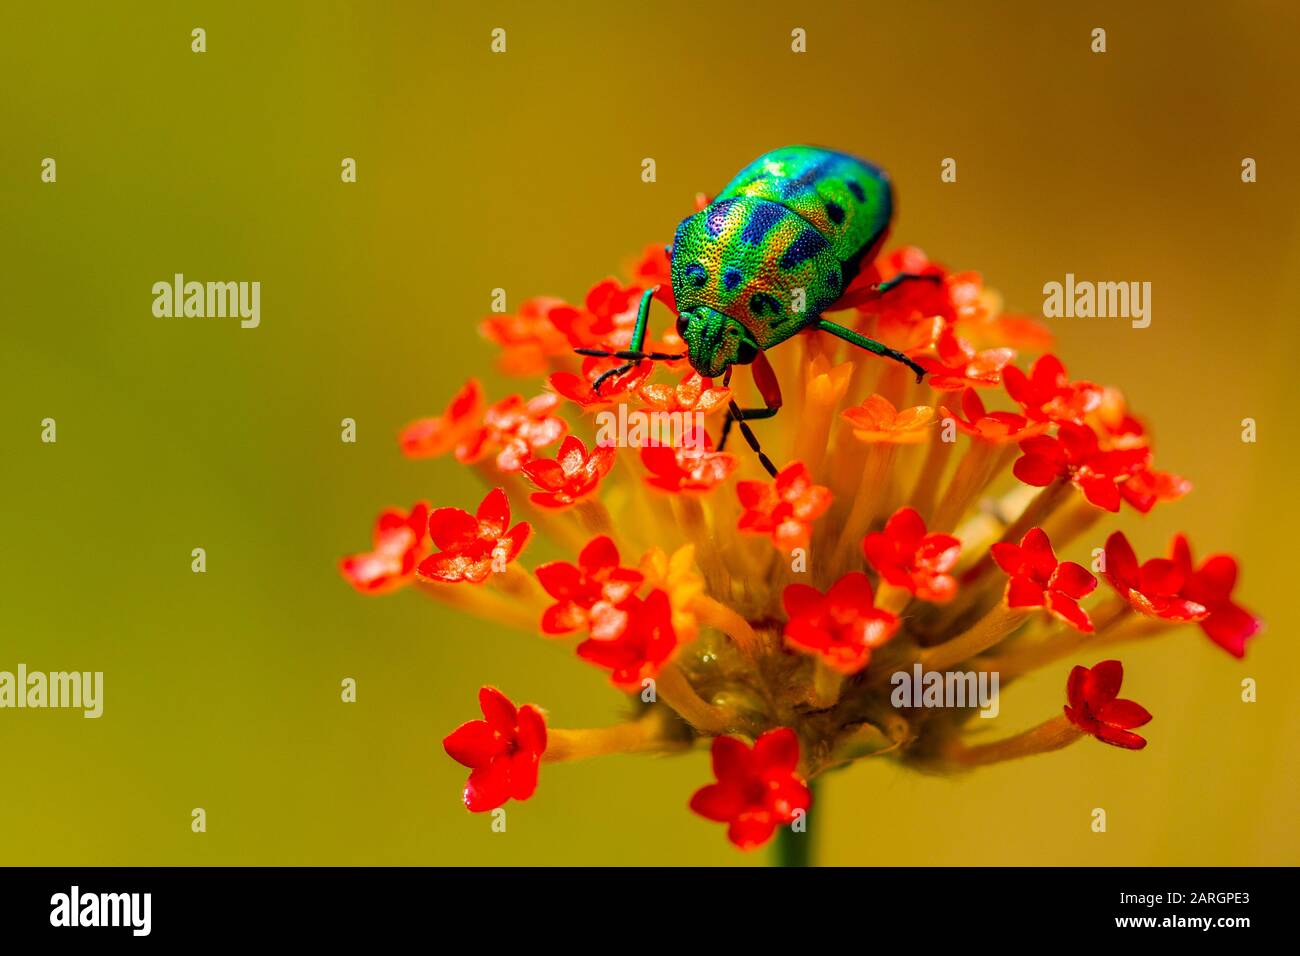 Macro beetle on flowers Stock Photo